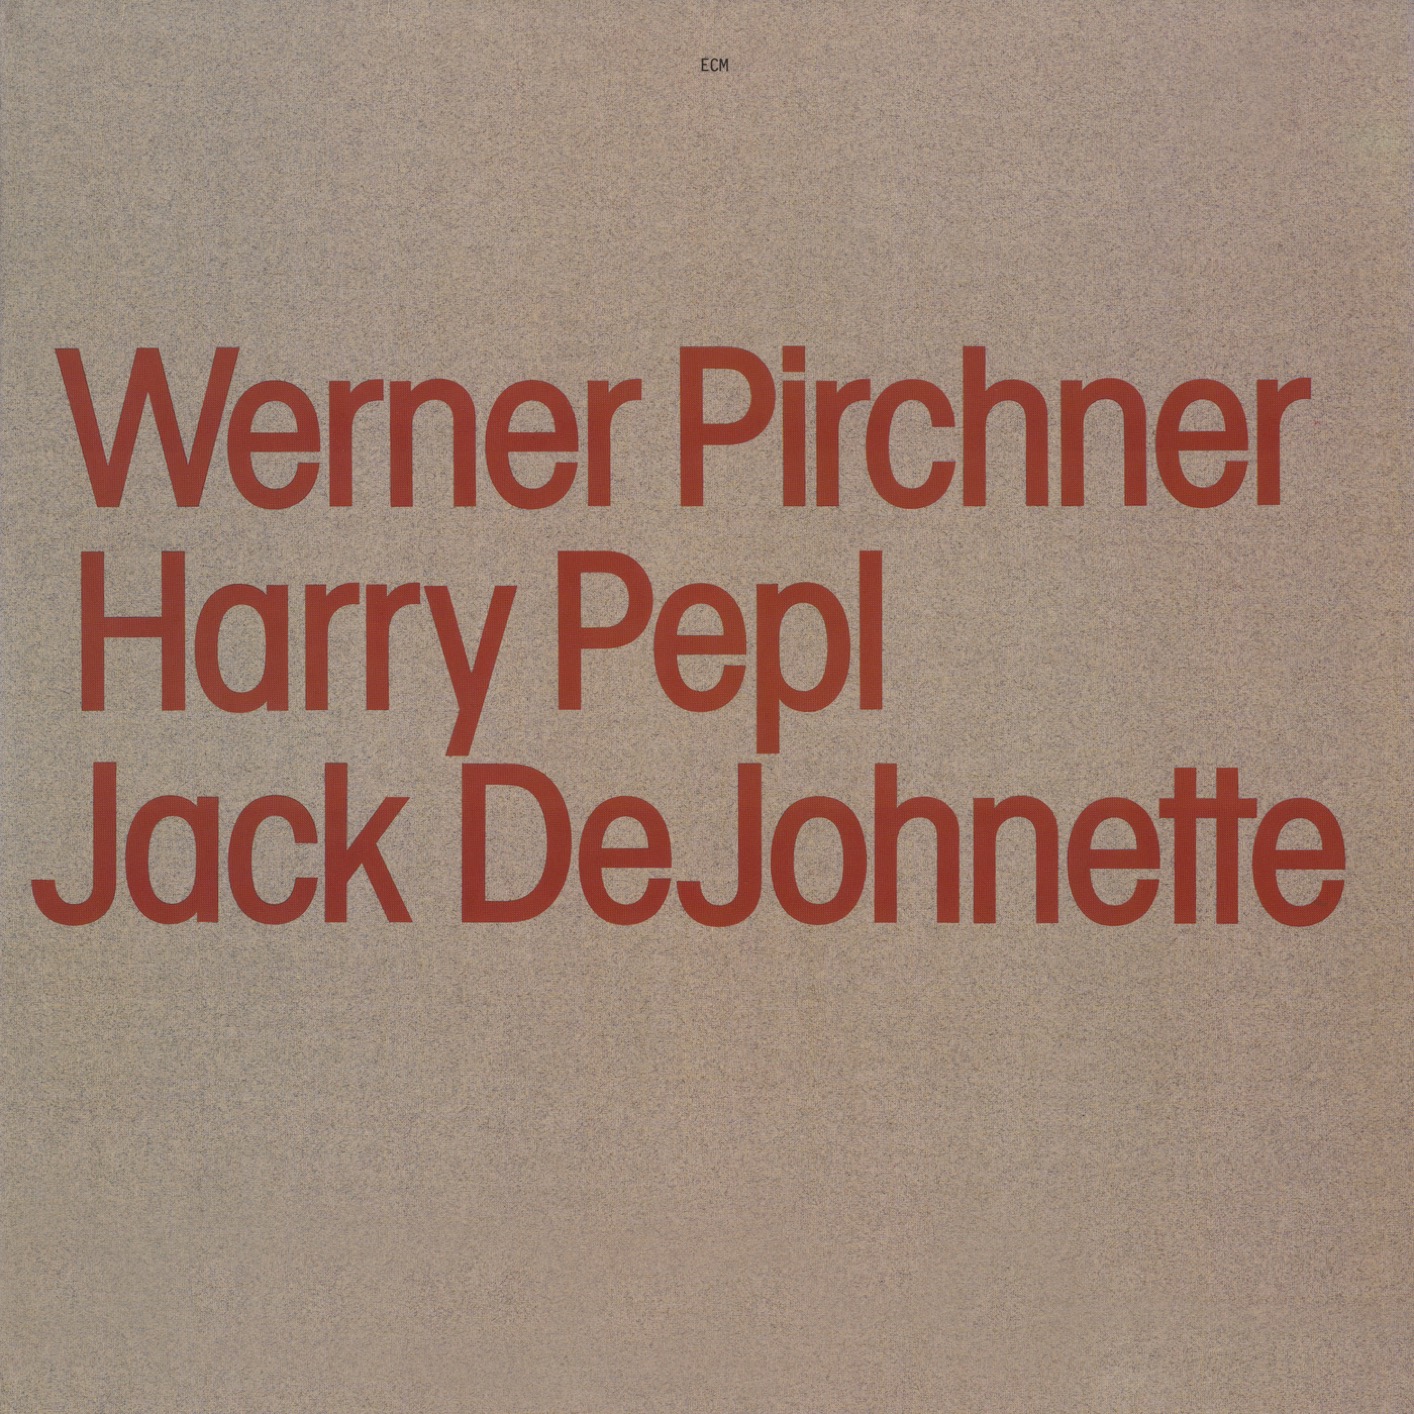 Werner Pirchner, Harry Pepl, Jack DeJohnette – Werner Pirchner, Harry Pepl, Jack DeJohnette (1983/2019) [FLAC 24bit/44,1kHz]